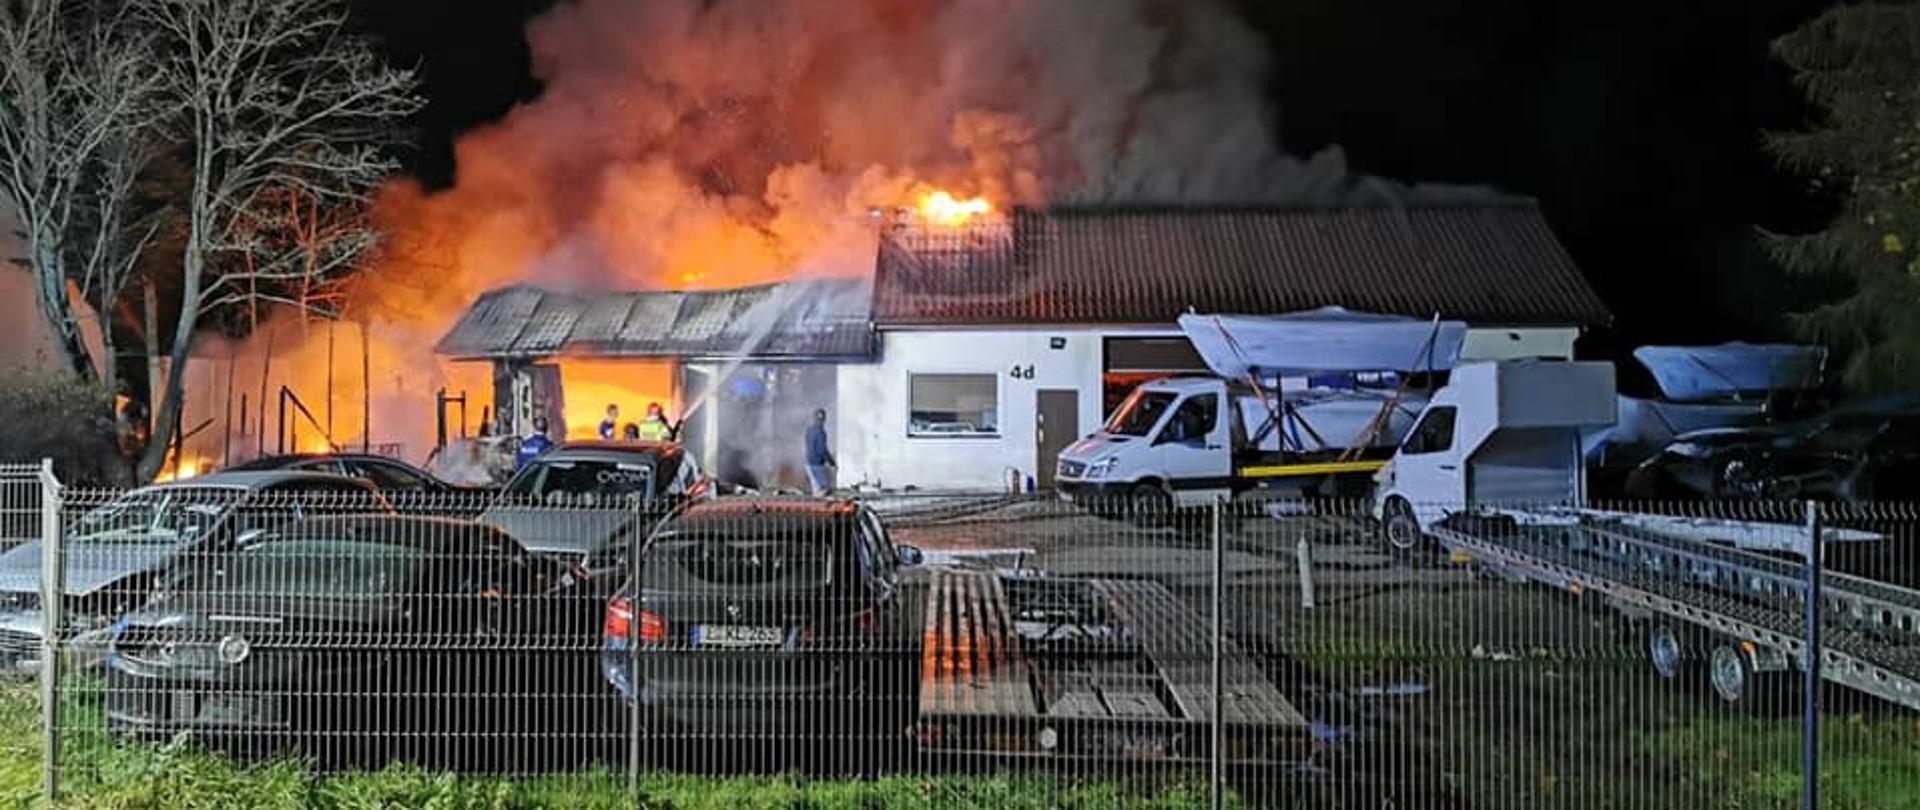 Zdjęcie przedstawia pożar budynku mieszkalnego wraz z garażami.